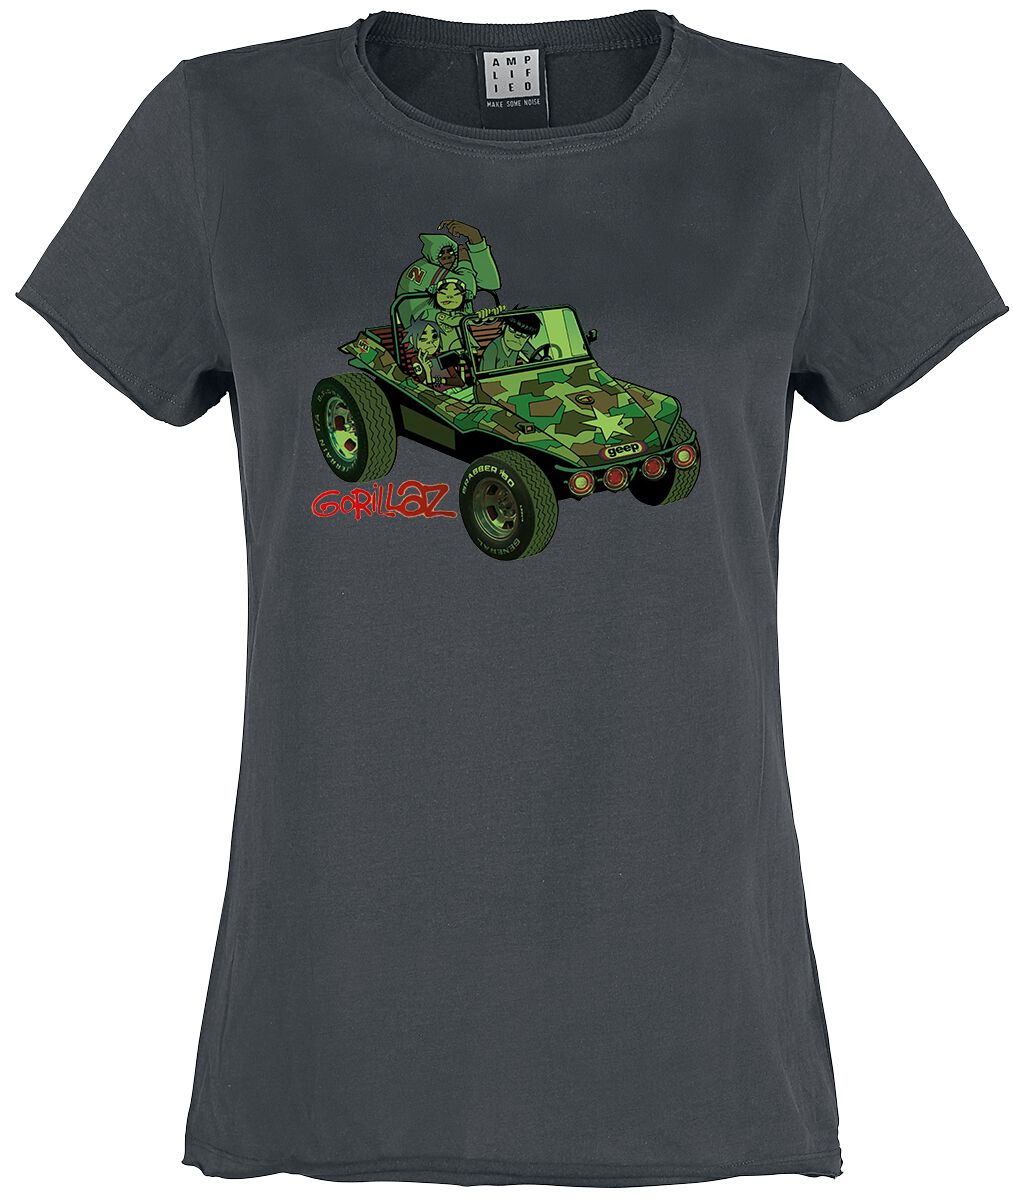 Gorillaz T-Shirt - Amplified Collection - Geep - S bis XL - für Damen - Größe M - charcoal  - Lizenziertes Merchandise!